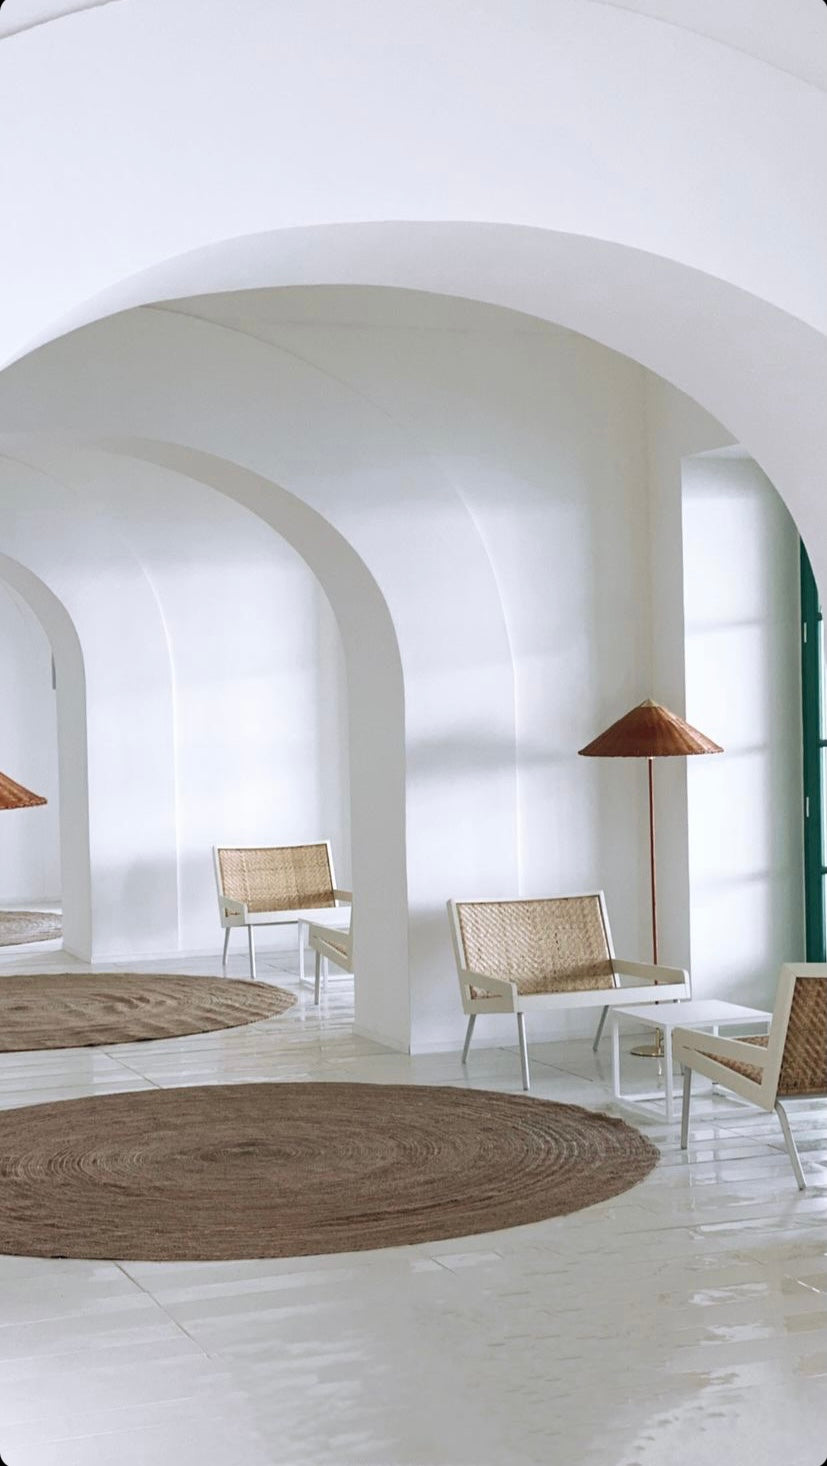 PARK HOTEL MIRAMARE - Giuliano dell'Uva architetti